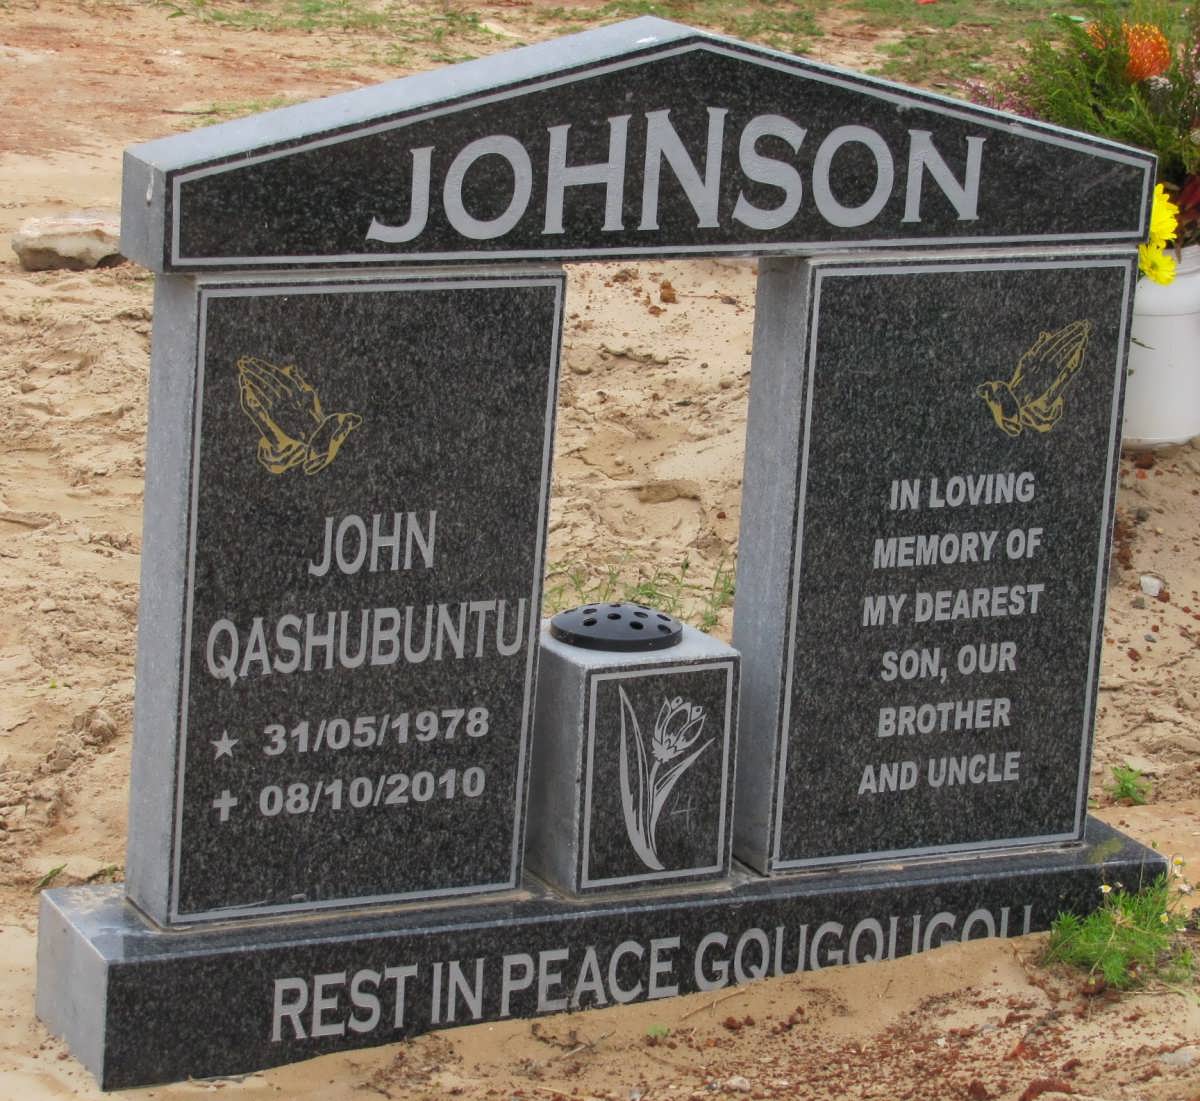 JOHNSON John Qashubuntu 1978-2010